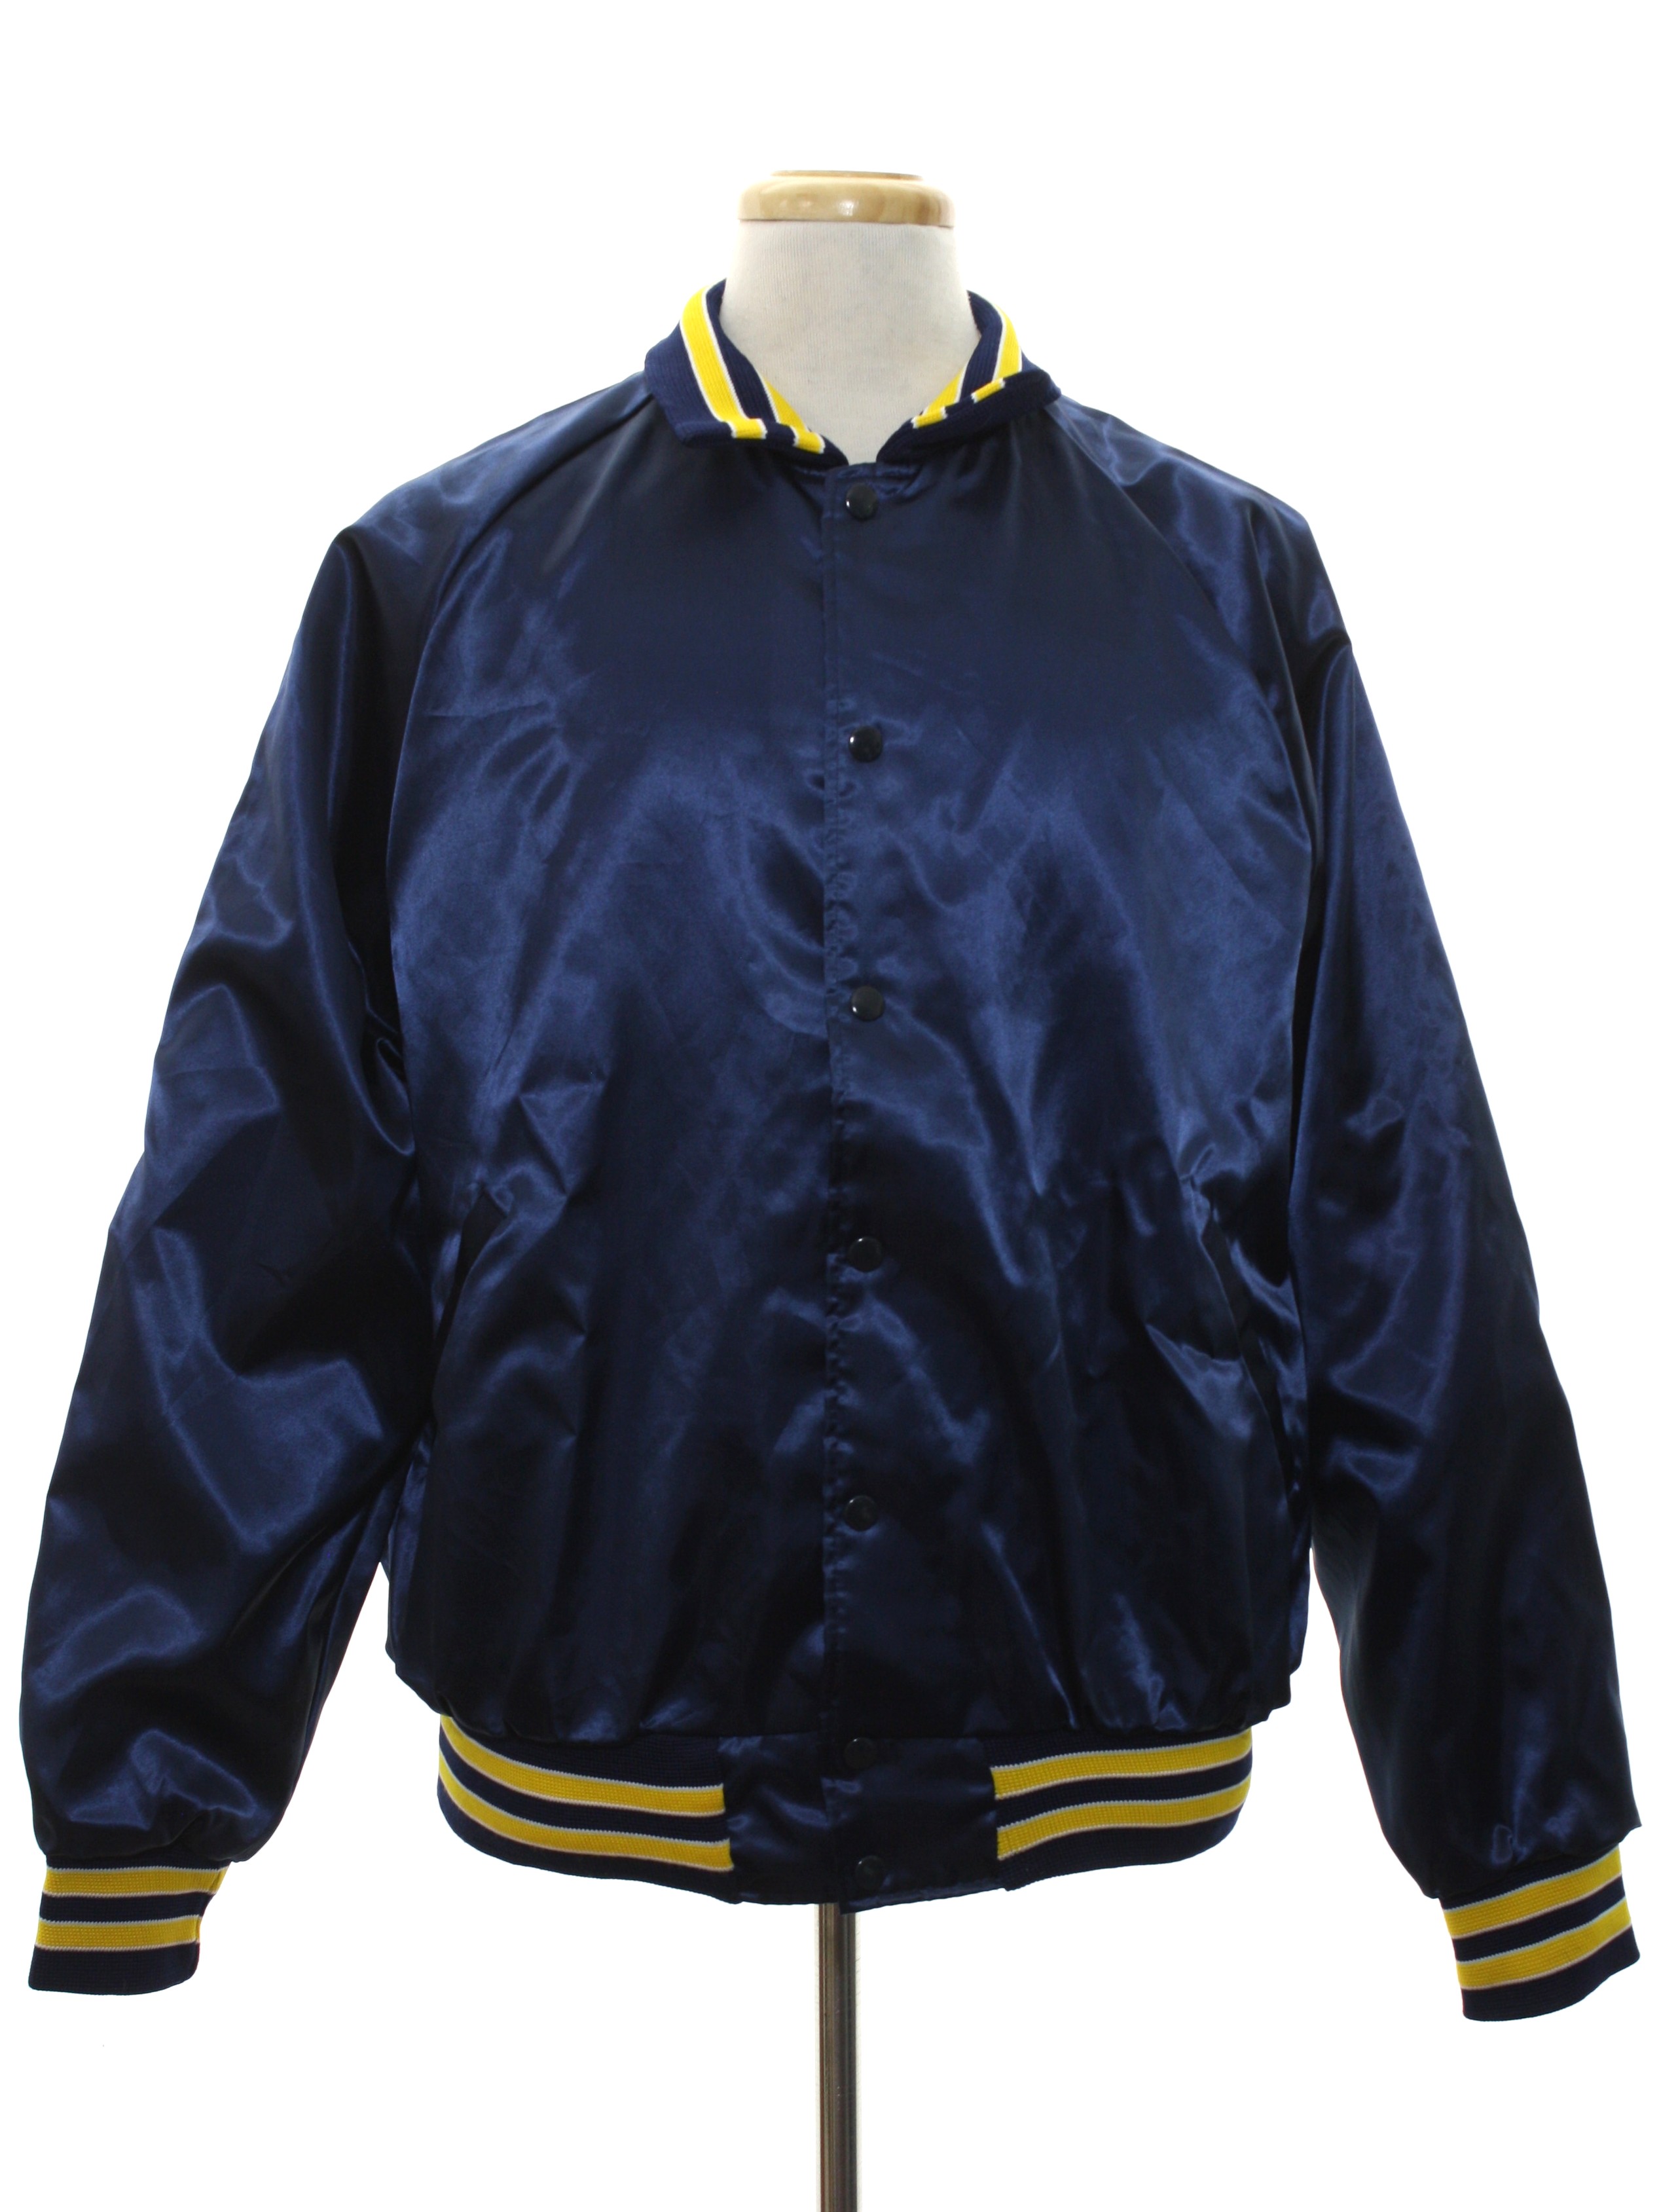 1980's Vintage Hilton Active Apparel Jacket: 80s -Hilton Active Apparel ...